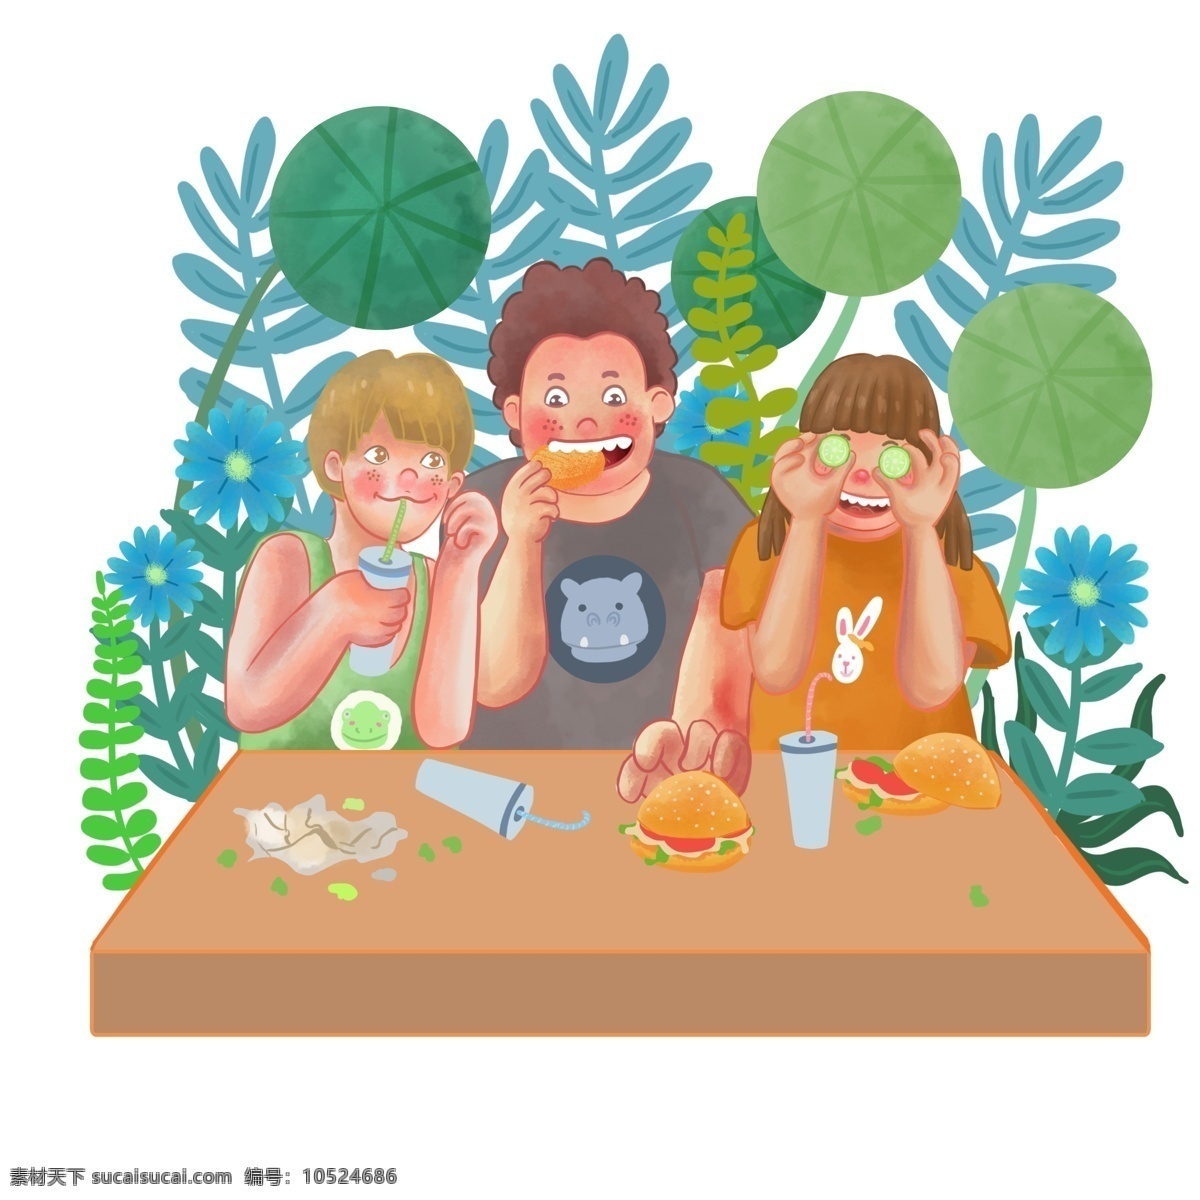 商用 高清 手绘 卡通 人物 童儿 一起 快乐 吃喝 卡通形象 可商用 植物 汉堡 饮料